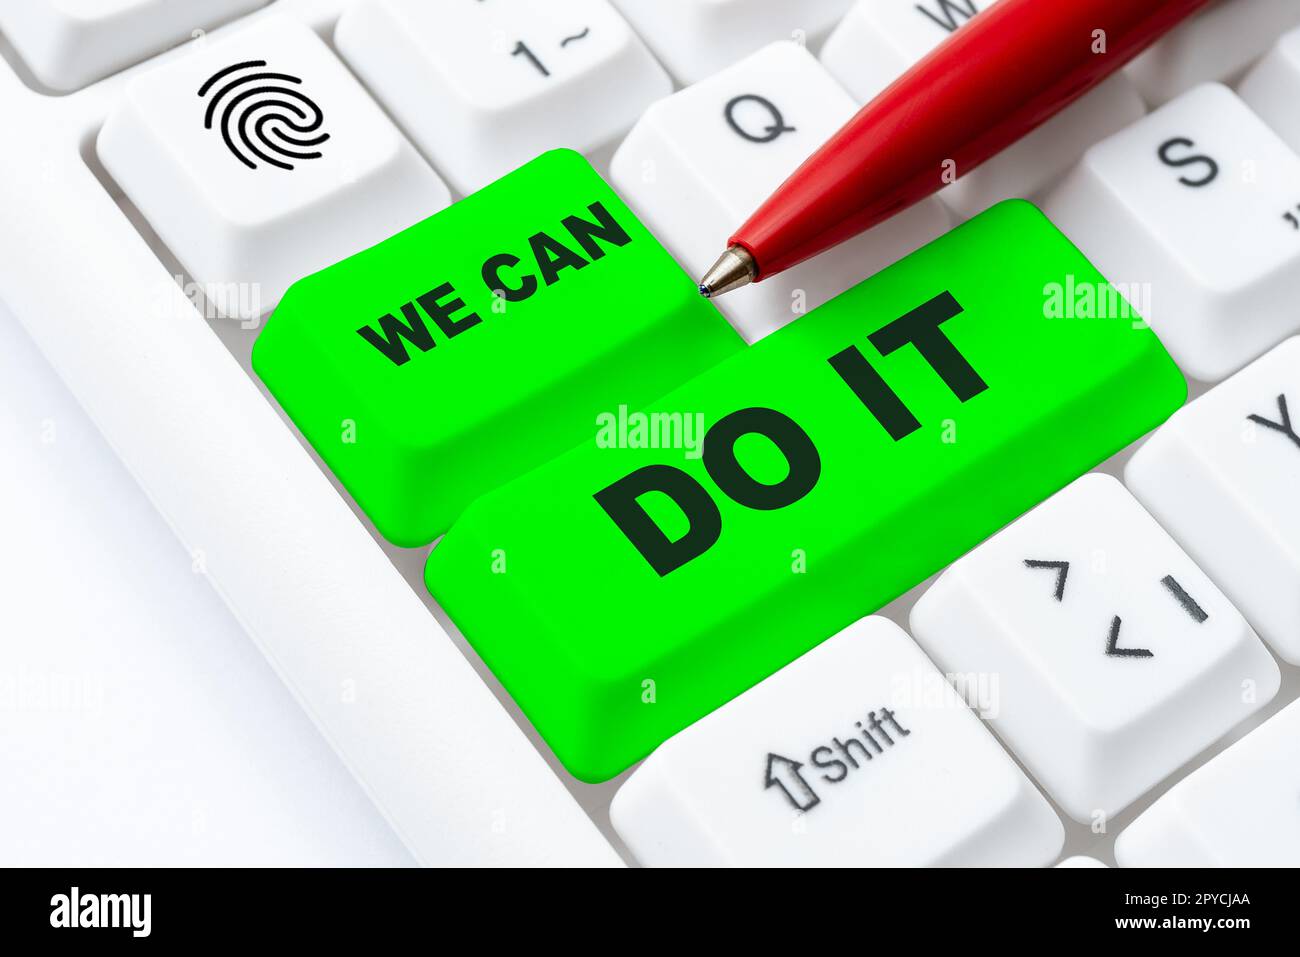 Ein handschriftliches Schild "Wir können es tun". Wort für Wort, betrachte dich selbst als mächtige, fähige Person Stockfoto